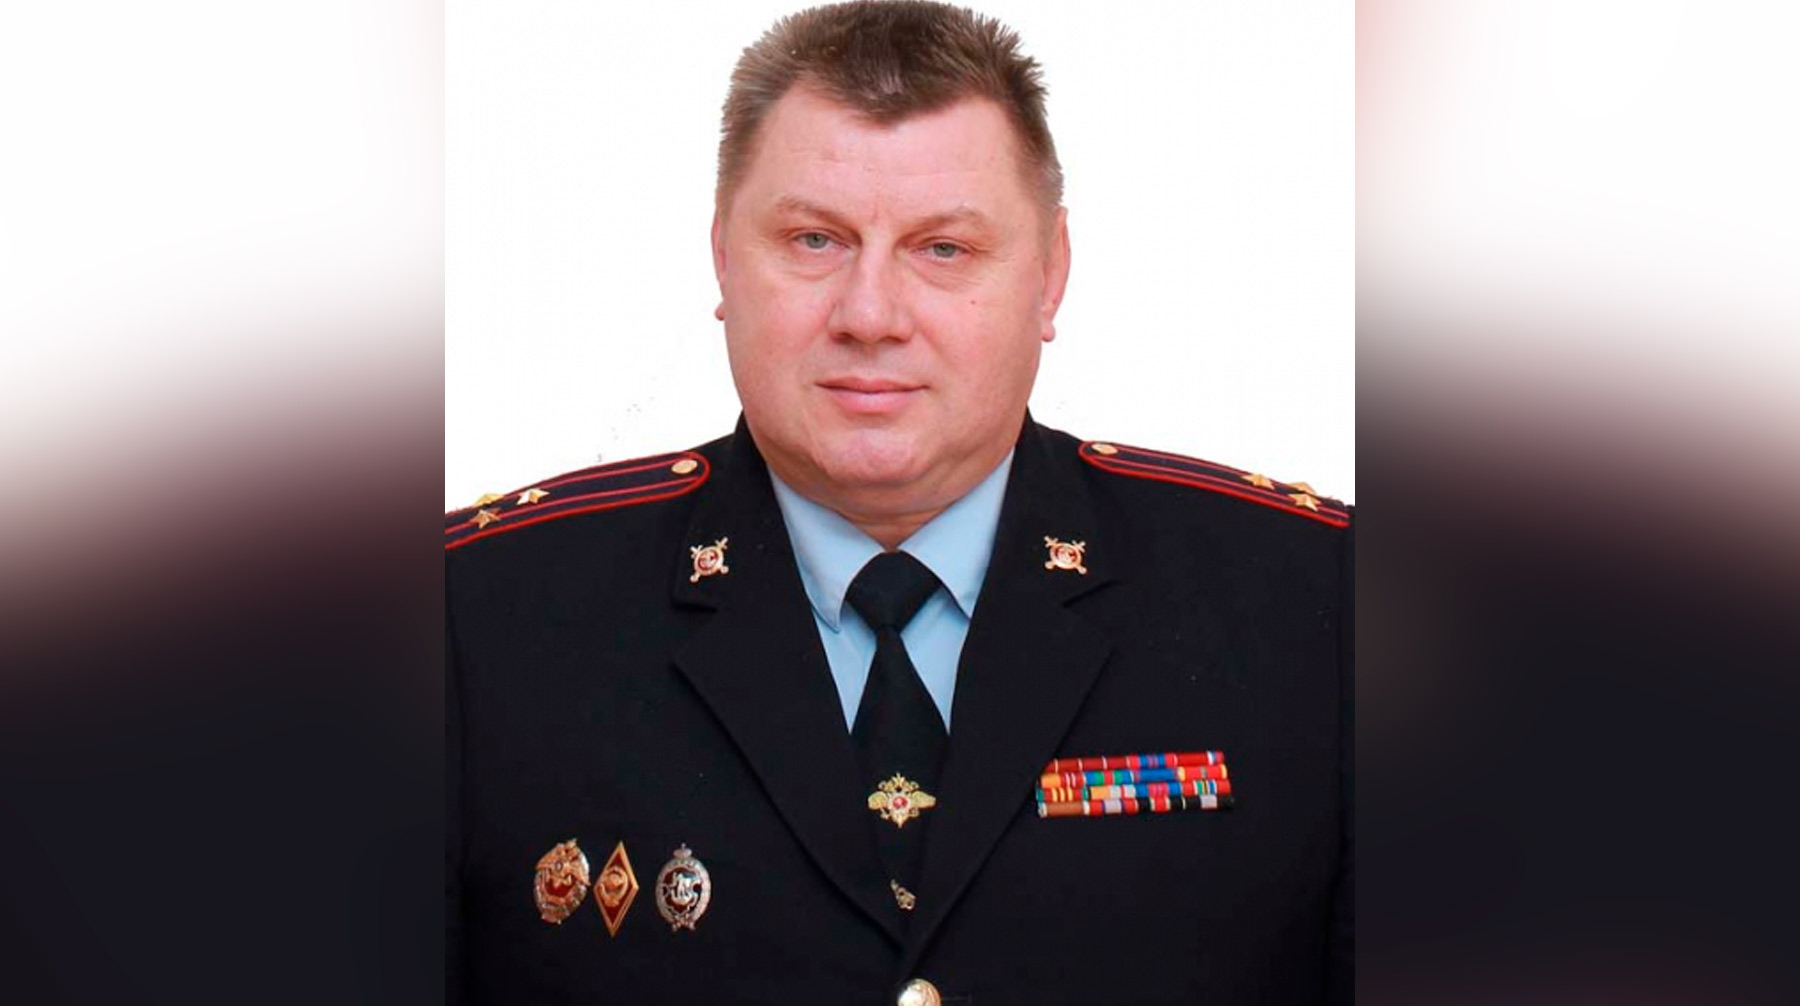 Хренов игорь николаевич тула полиция фото